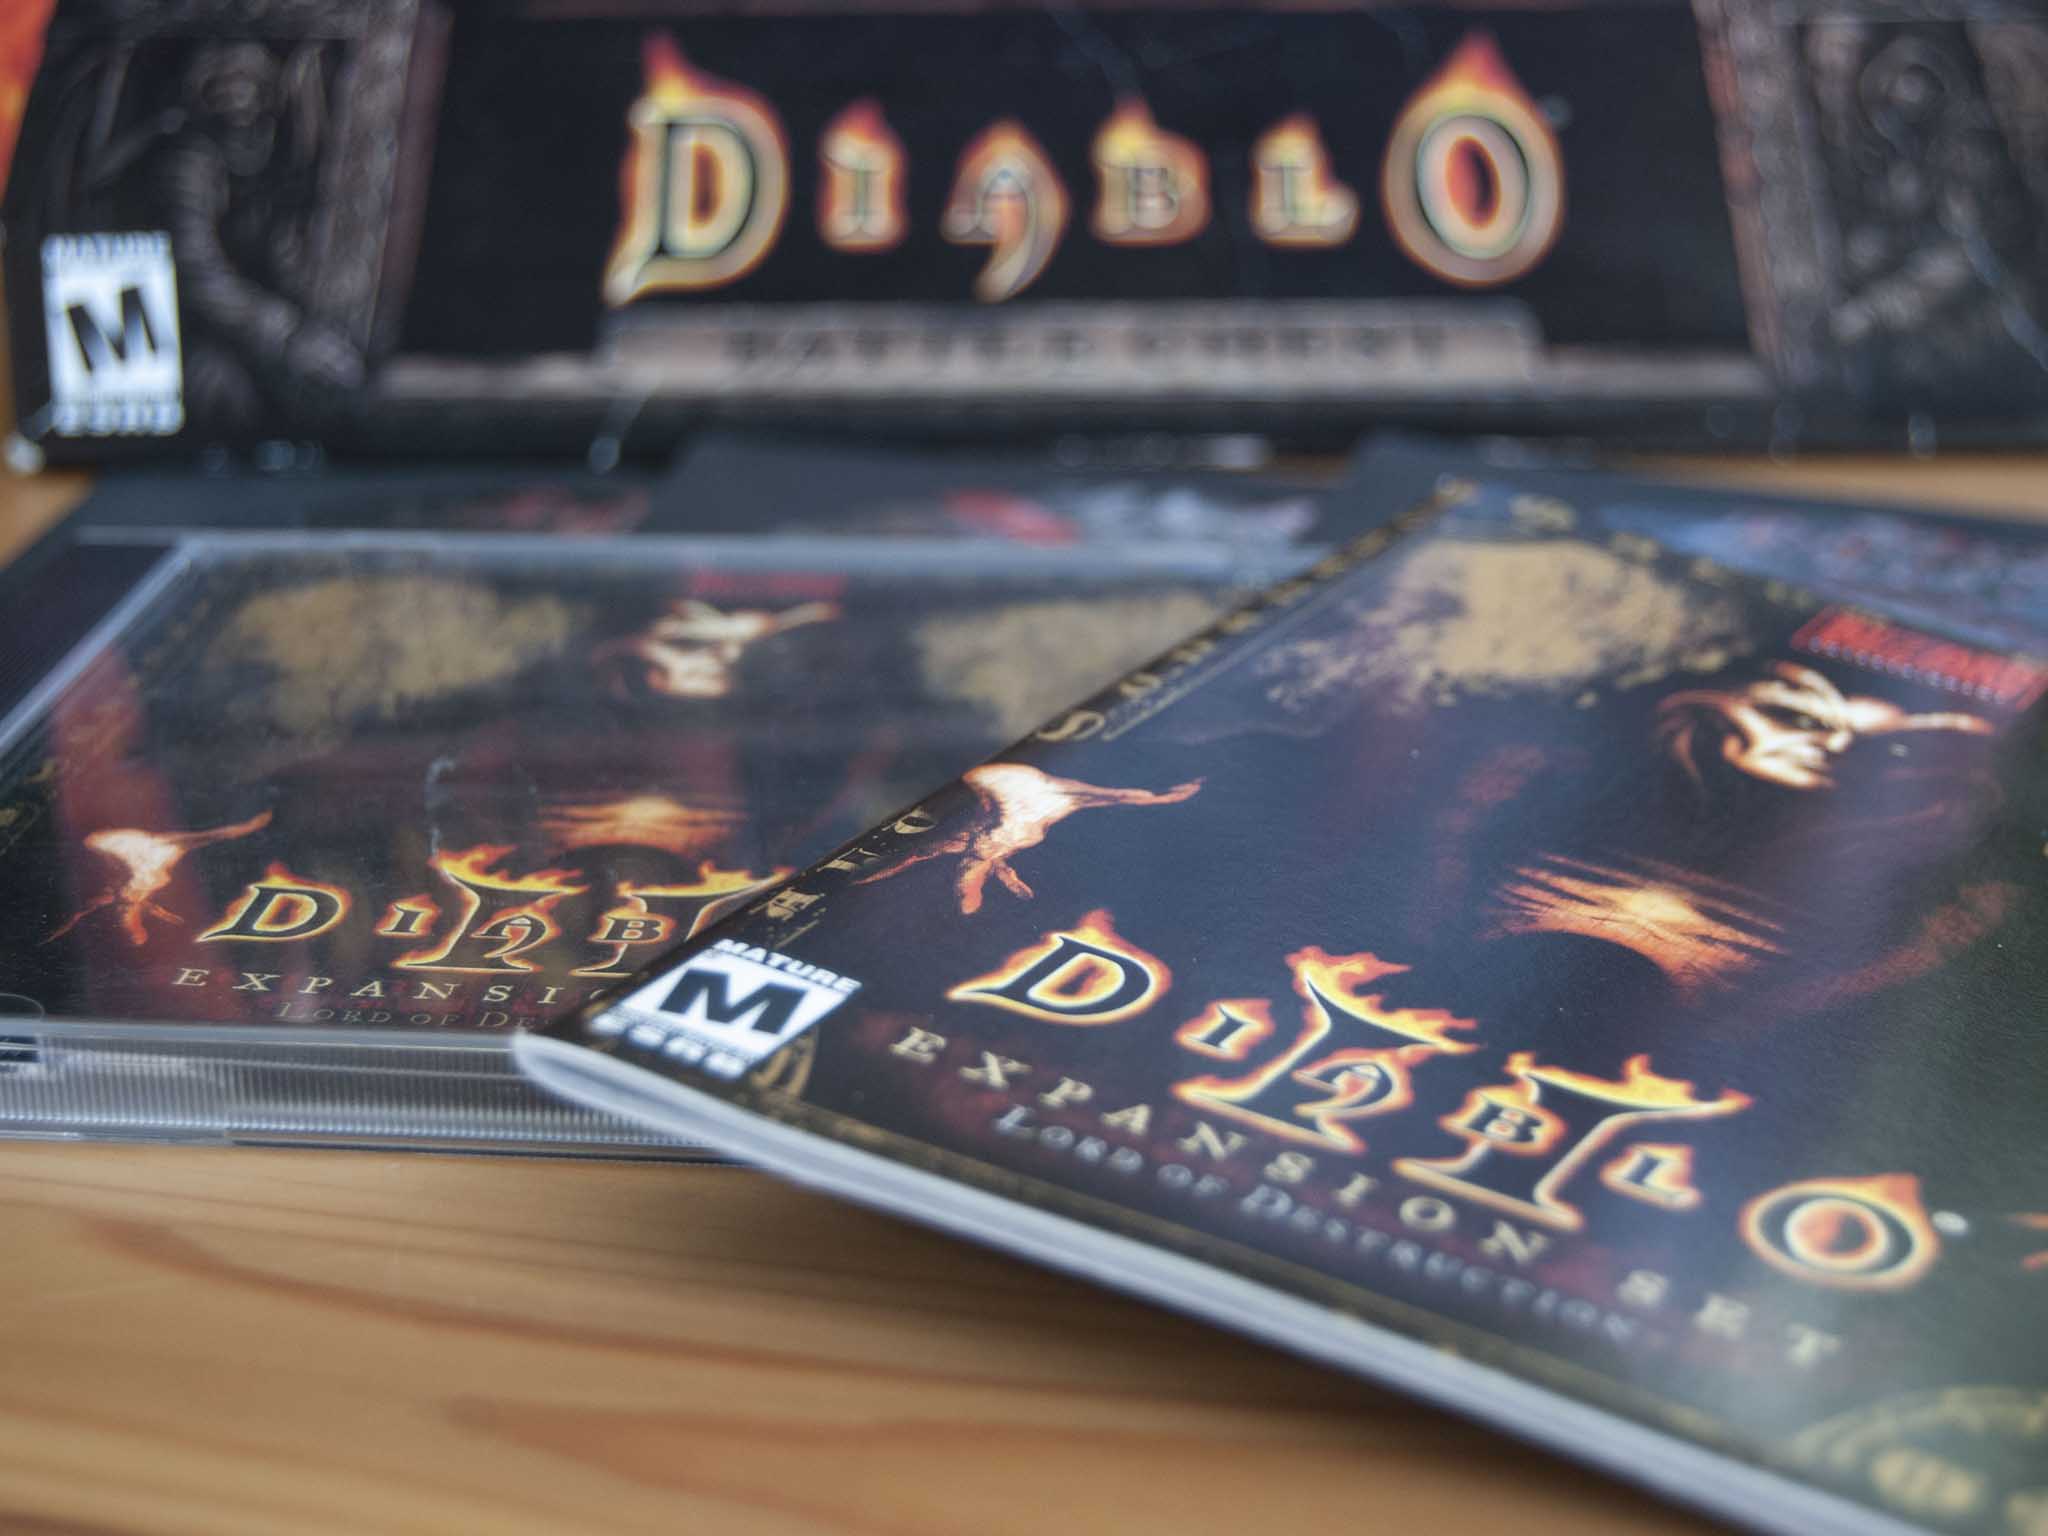 Best Diablo 2 mods? : r/Diablo